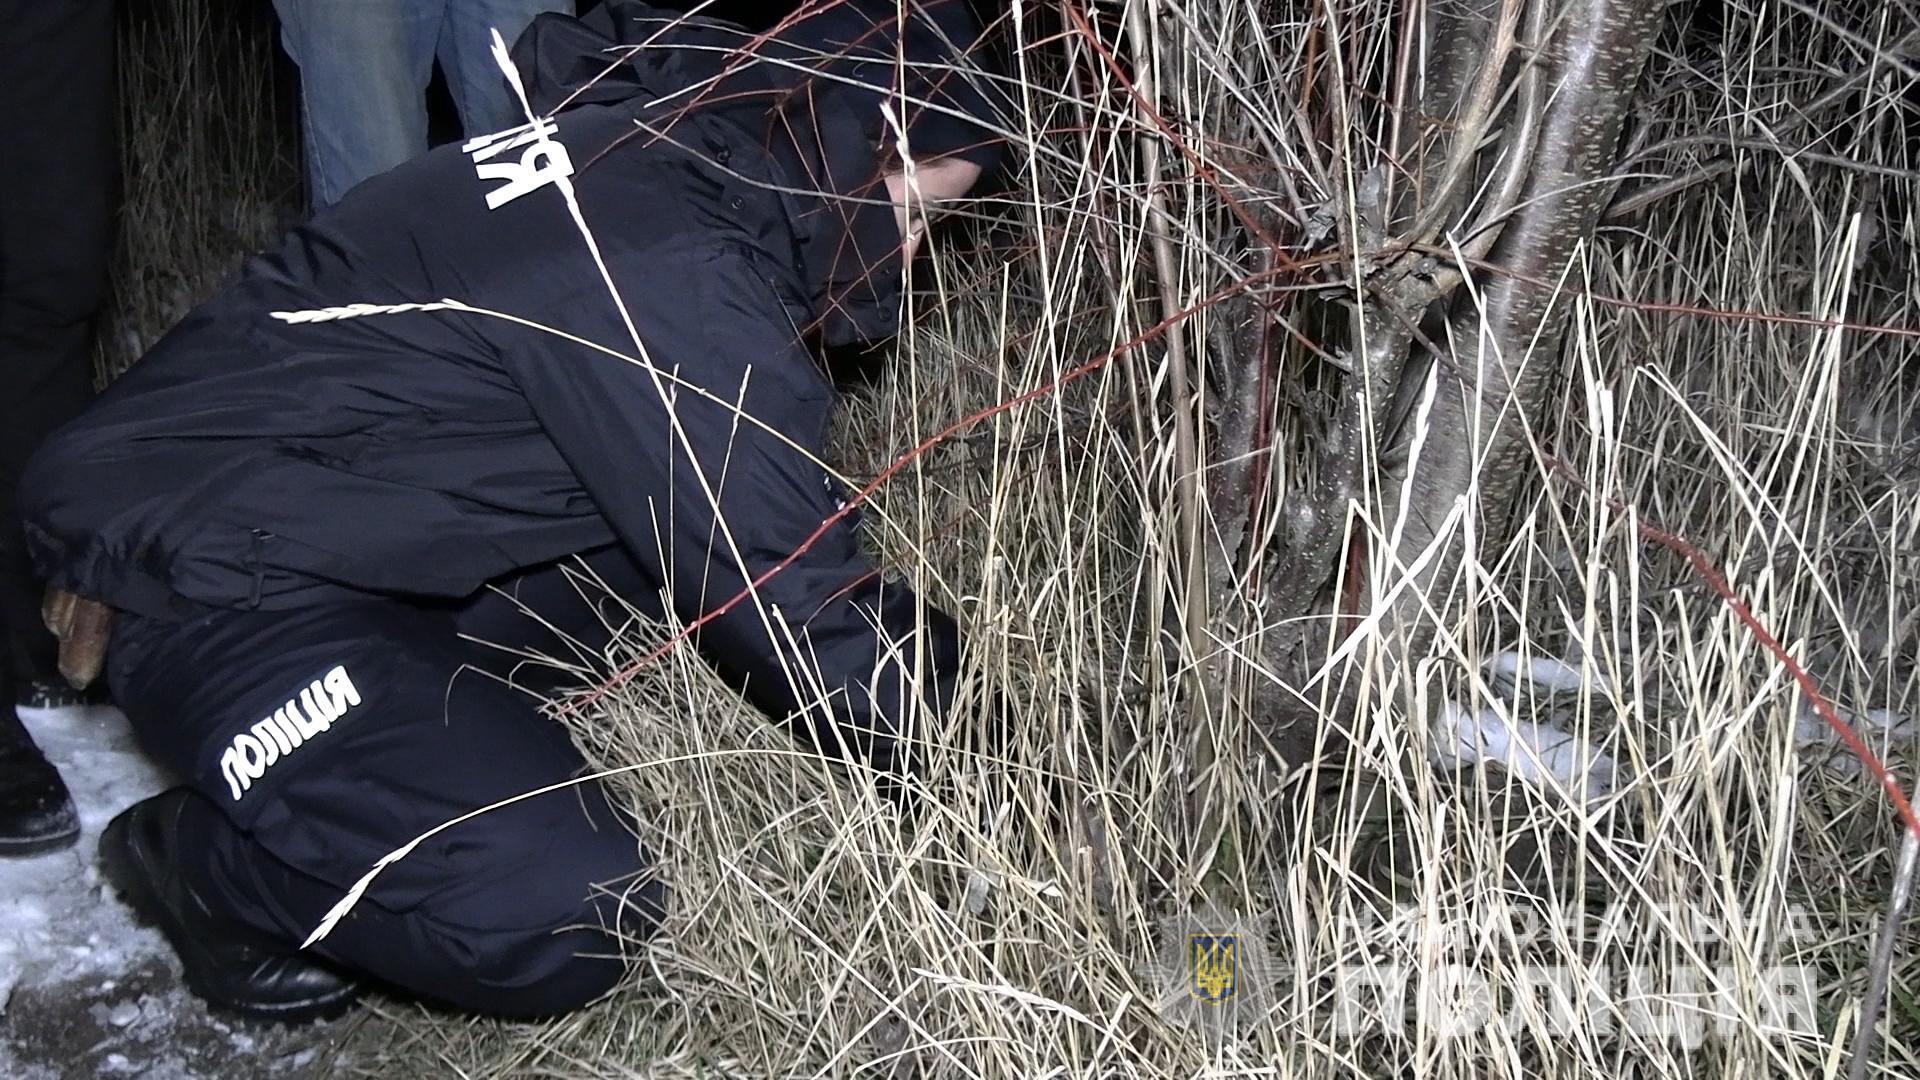 У Вінниці поліцейські затримали розповсюджувача наркотиків  з майже сотнею згортків амфетаміну